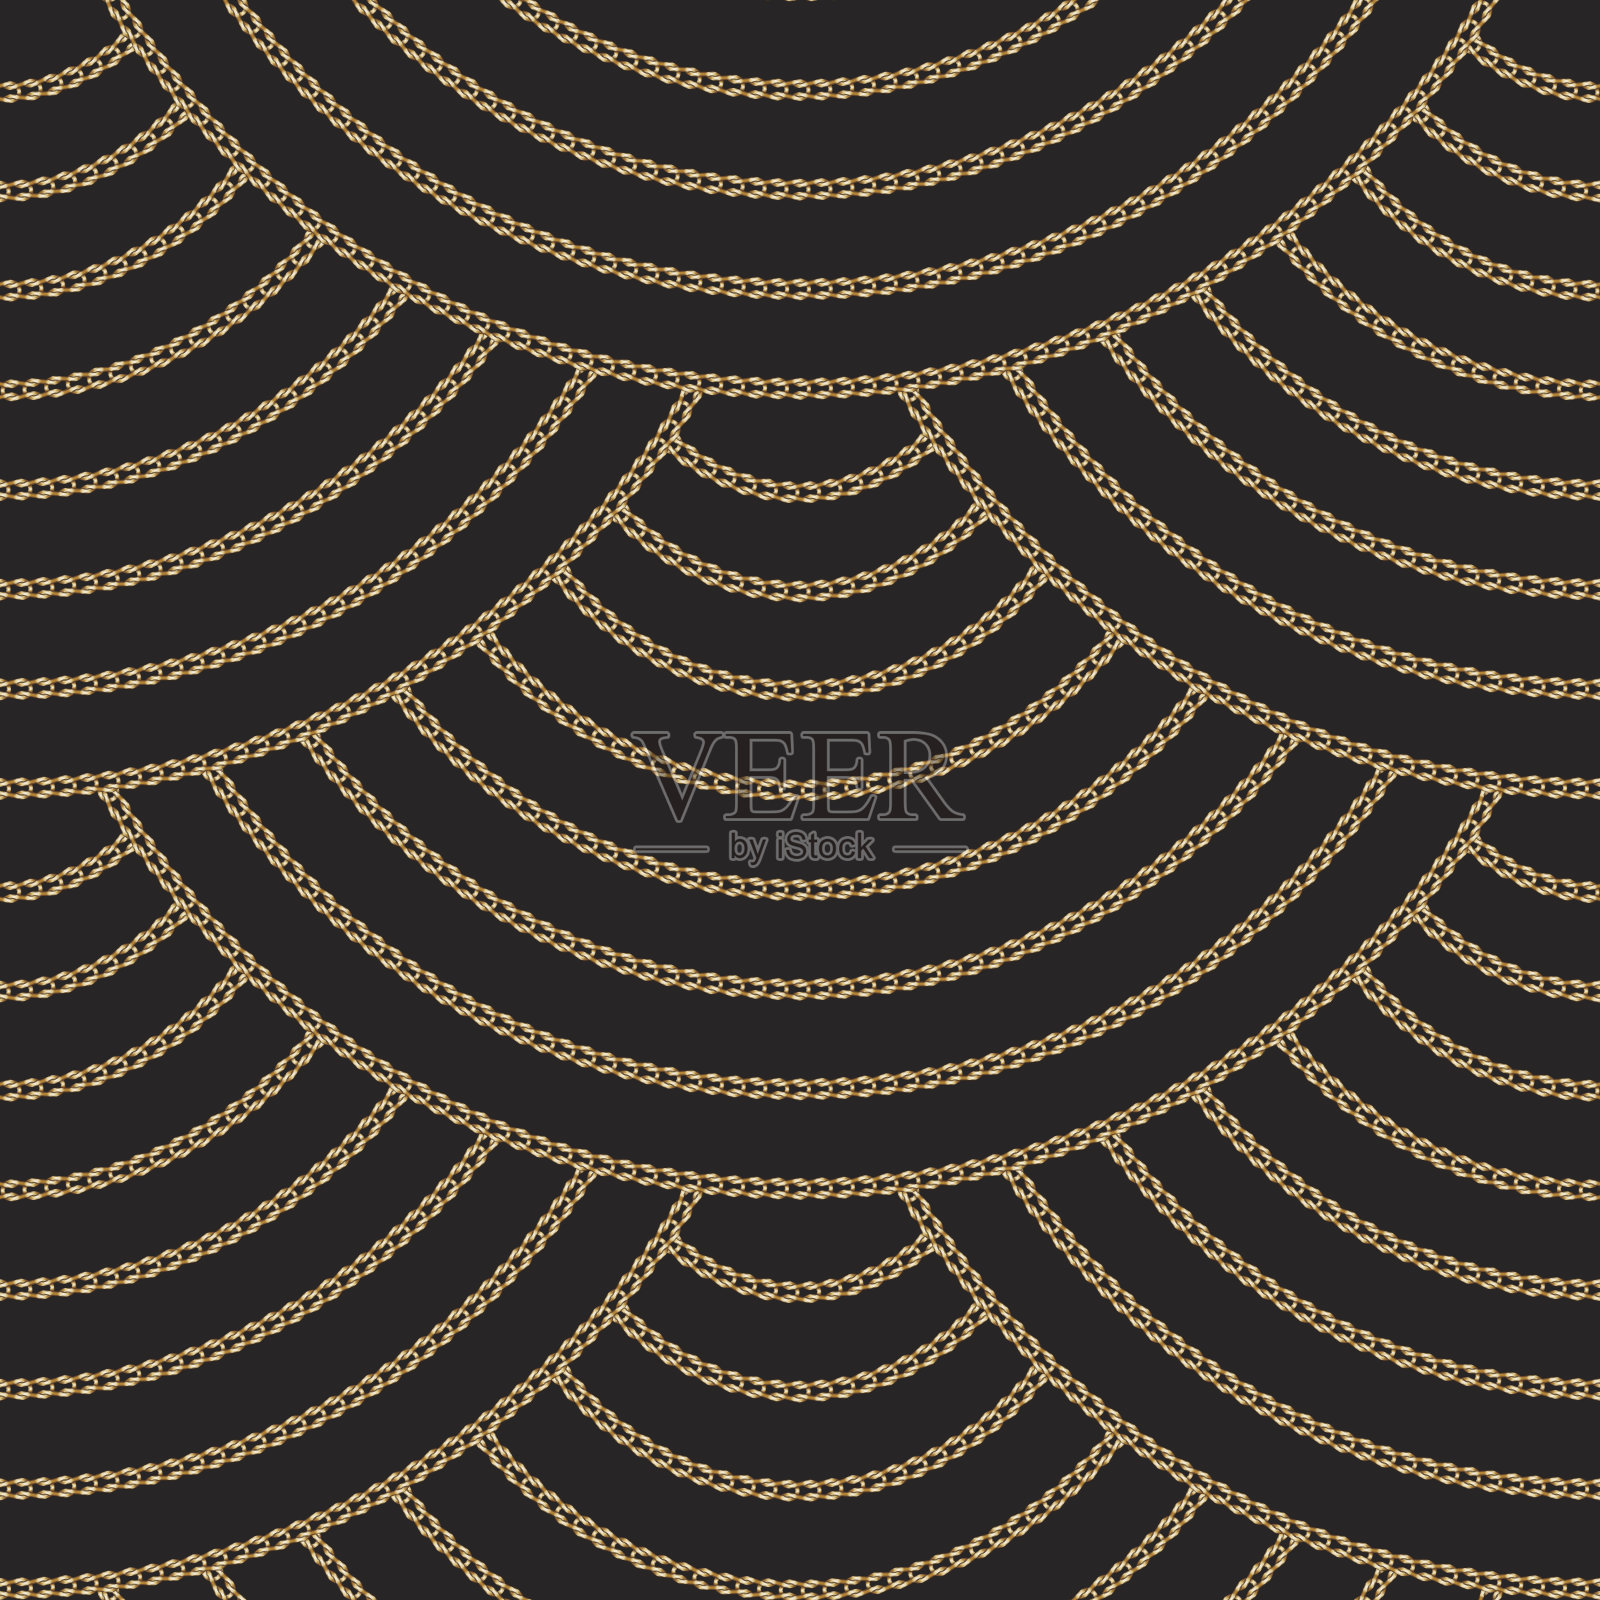 抽象无缝图案由金色编织的环和链在黑色的背景扇形装饰元素按比例顺序排列。墙纸，包装纸，印花织物，蜡染插画图片素材